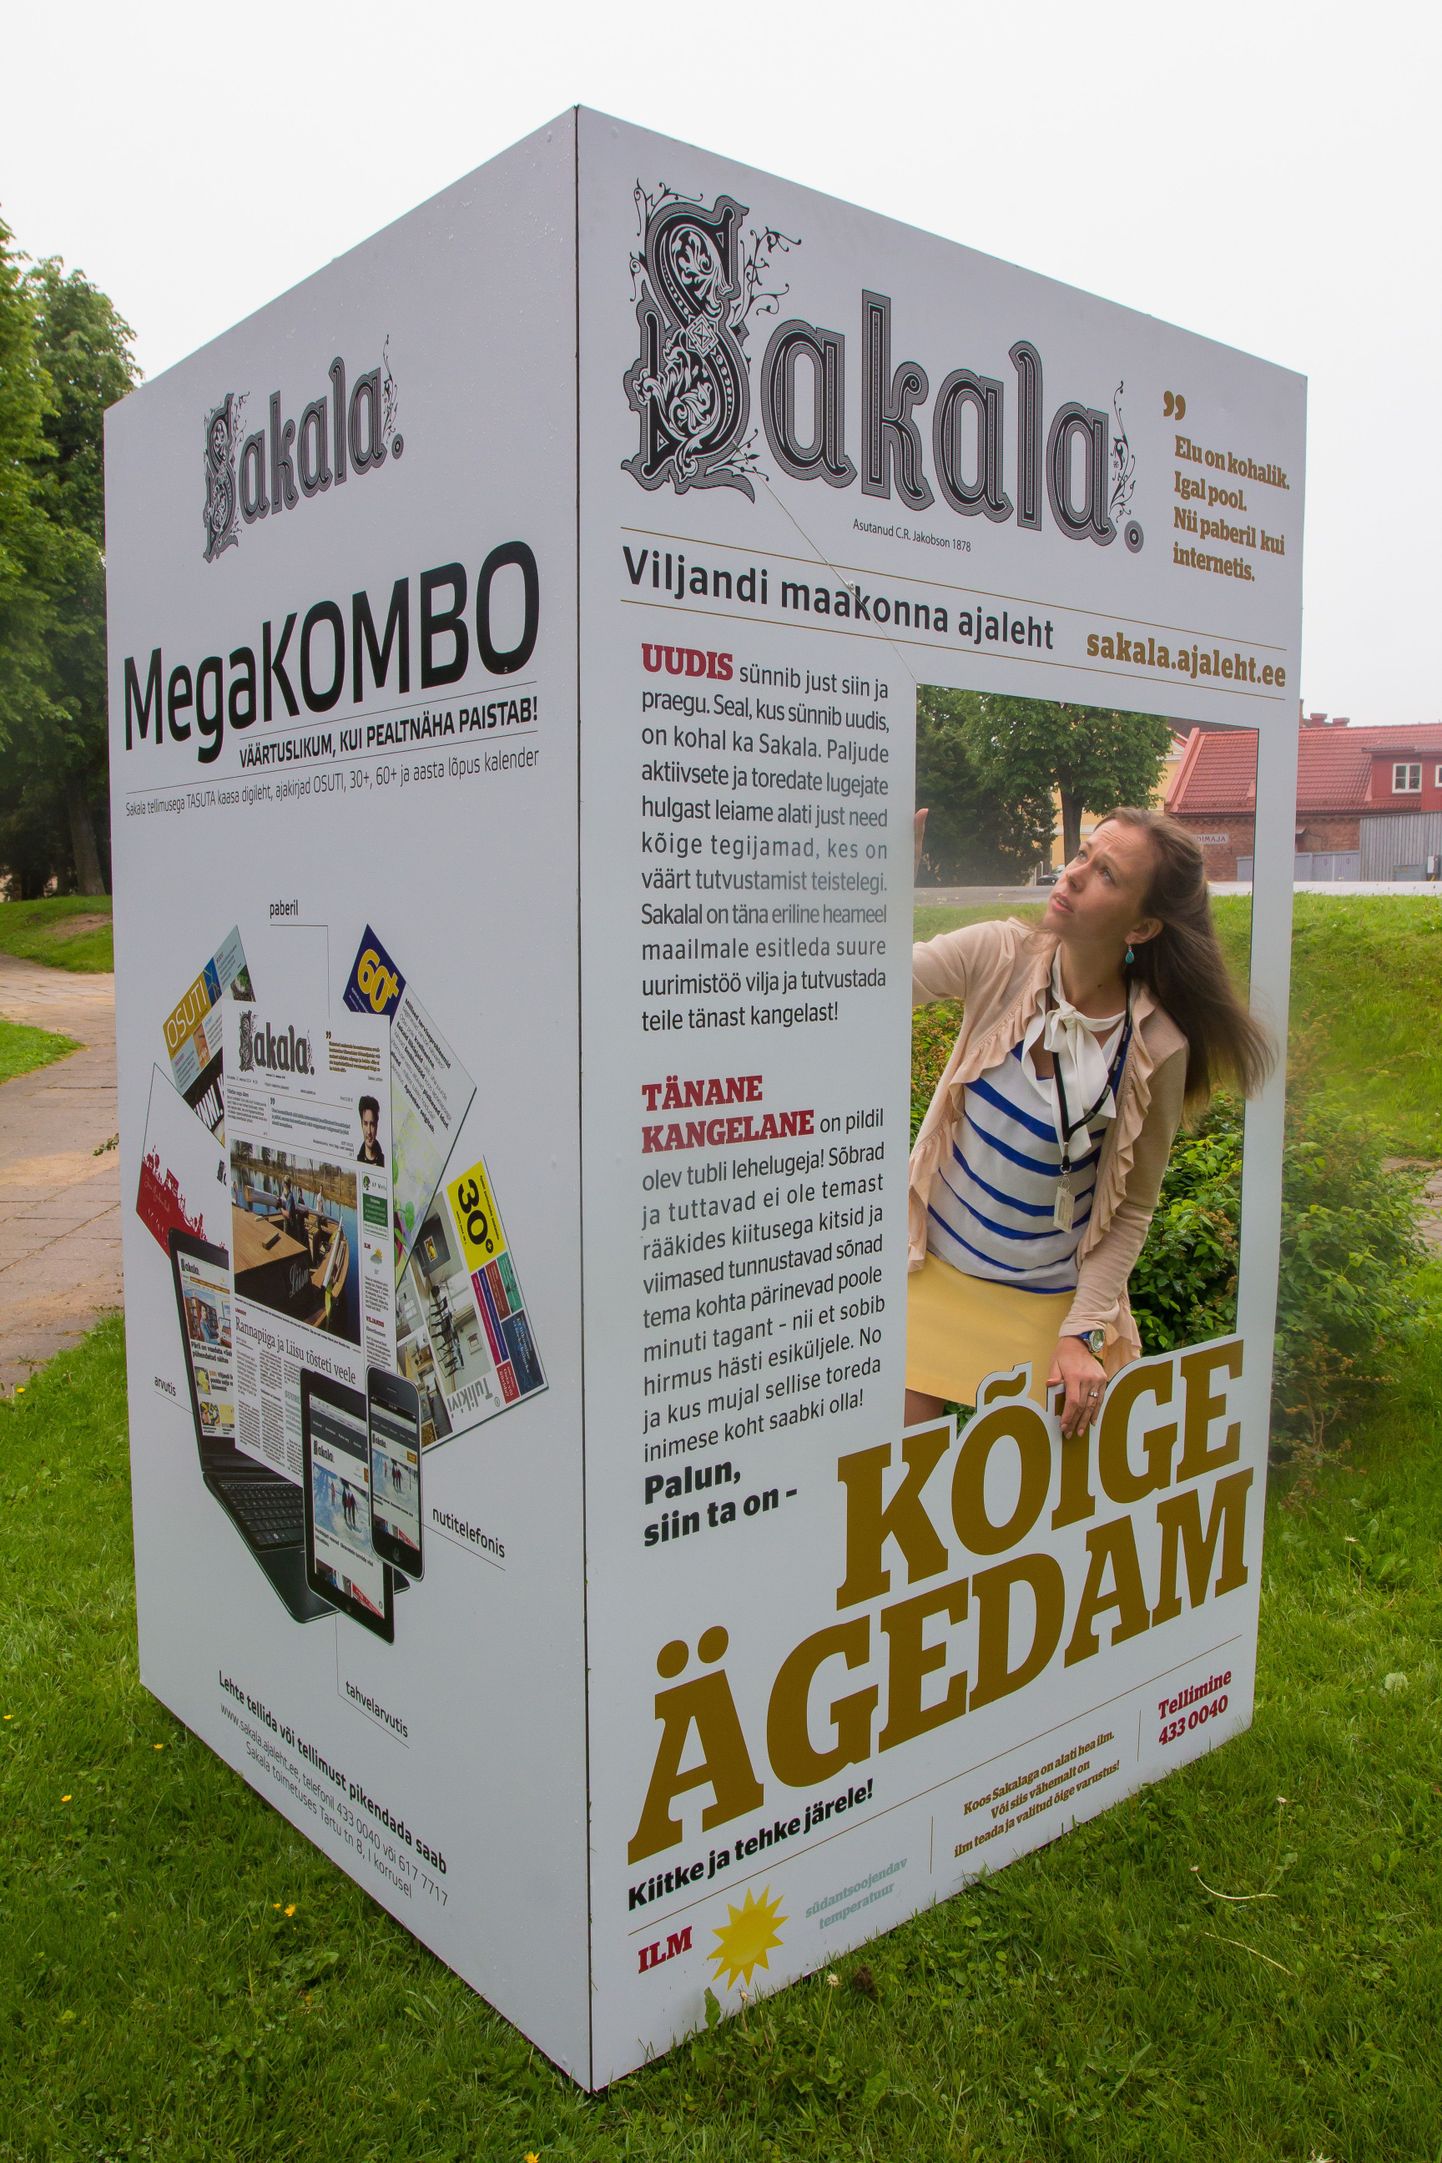 Sakala reklaam asub Viljandis Tartu tänaval otse Sakala maja ees. Selleks, et olla kõige ägedam, tuleb vaid esiküljel koht sisse võtta.